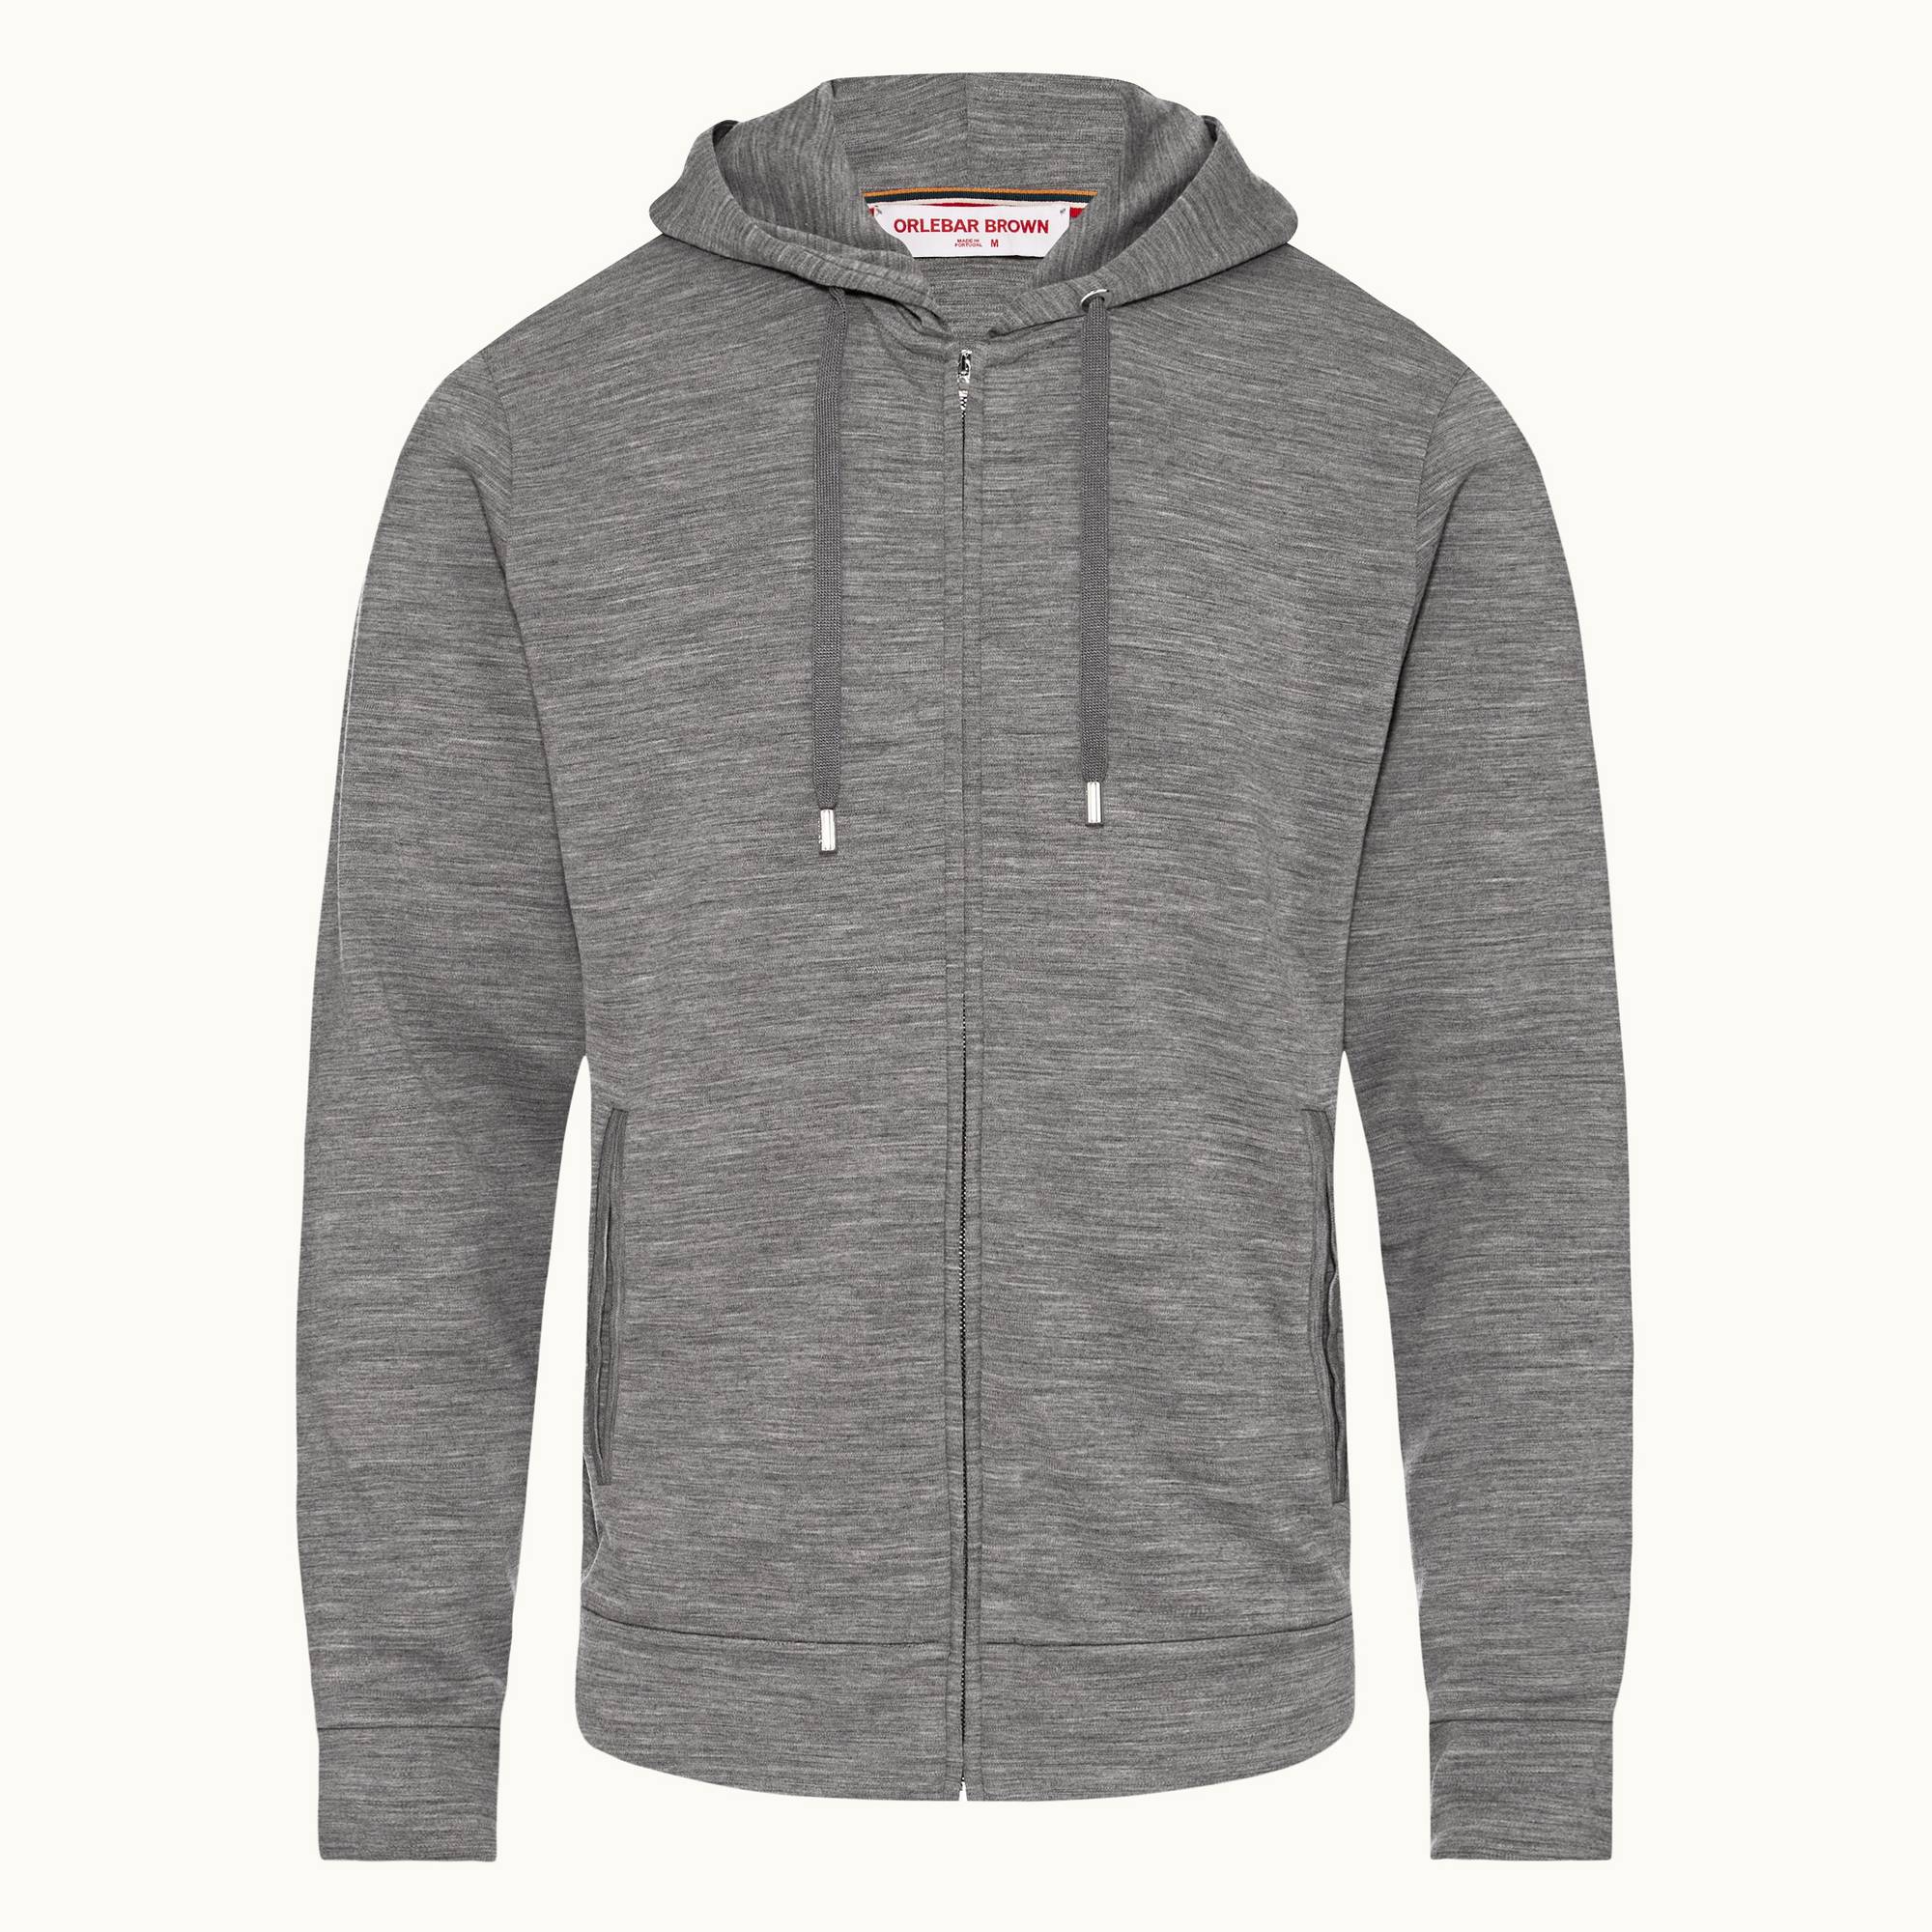 Mathers Merino - Mens Grey Melange Smart Merino Zip-Thru Hooded Sweatshirt